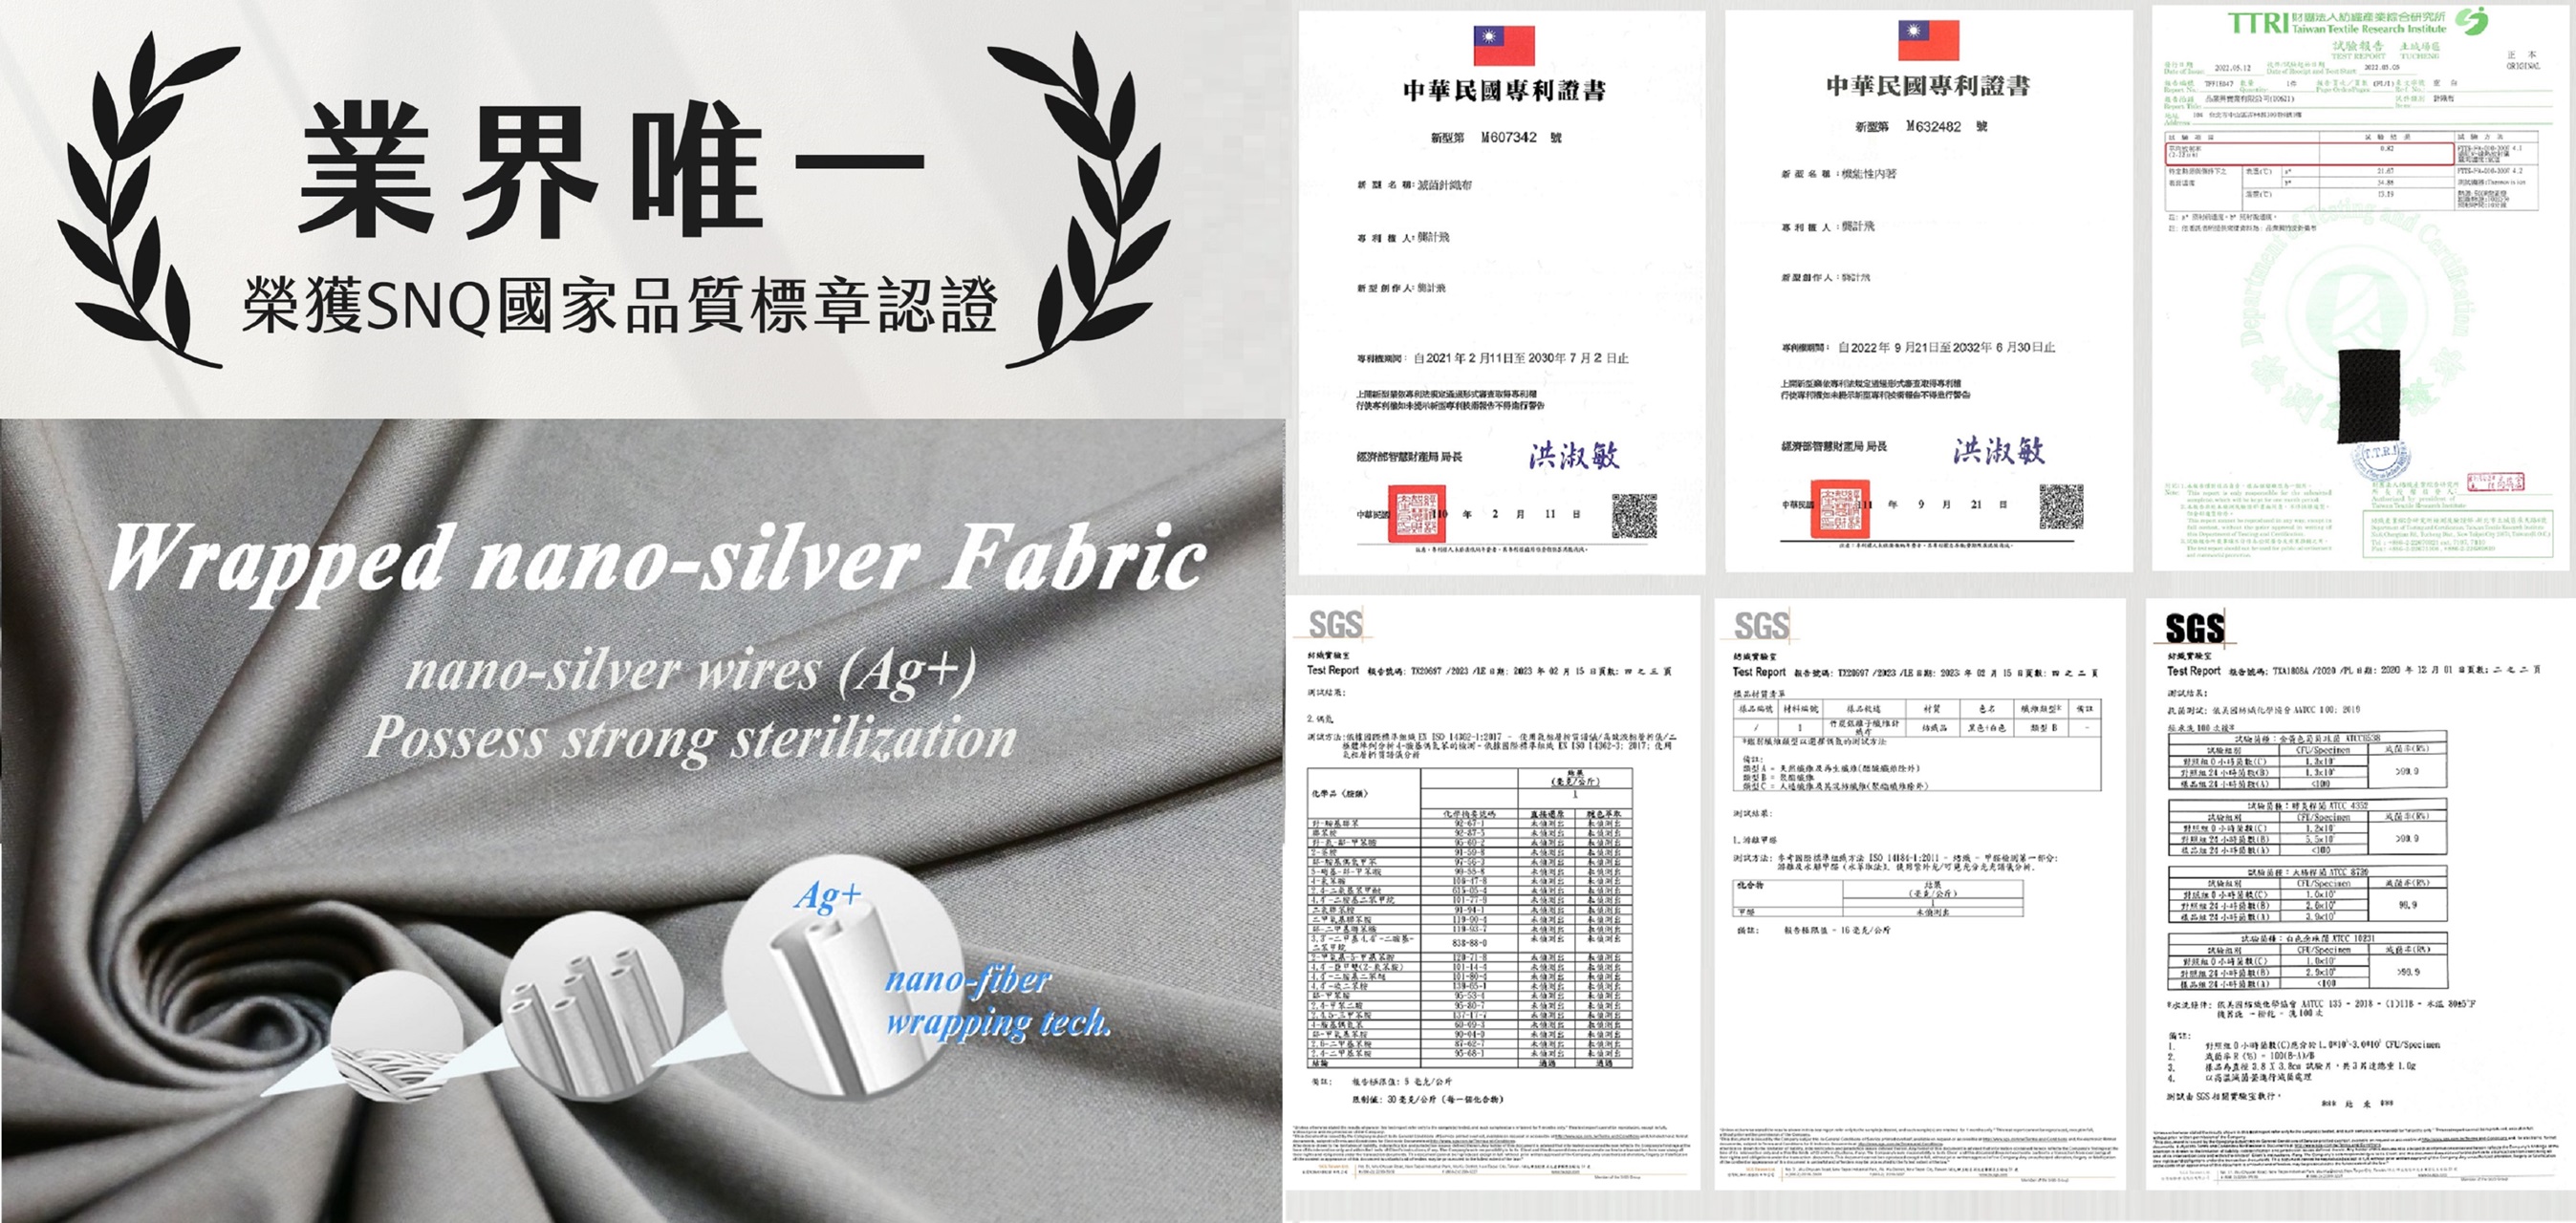 中華民國抗菌針織布專利證號M607342、第三方國際公正檢驗單位檢測報告